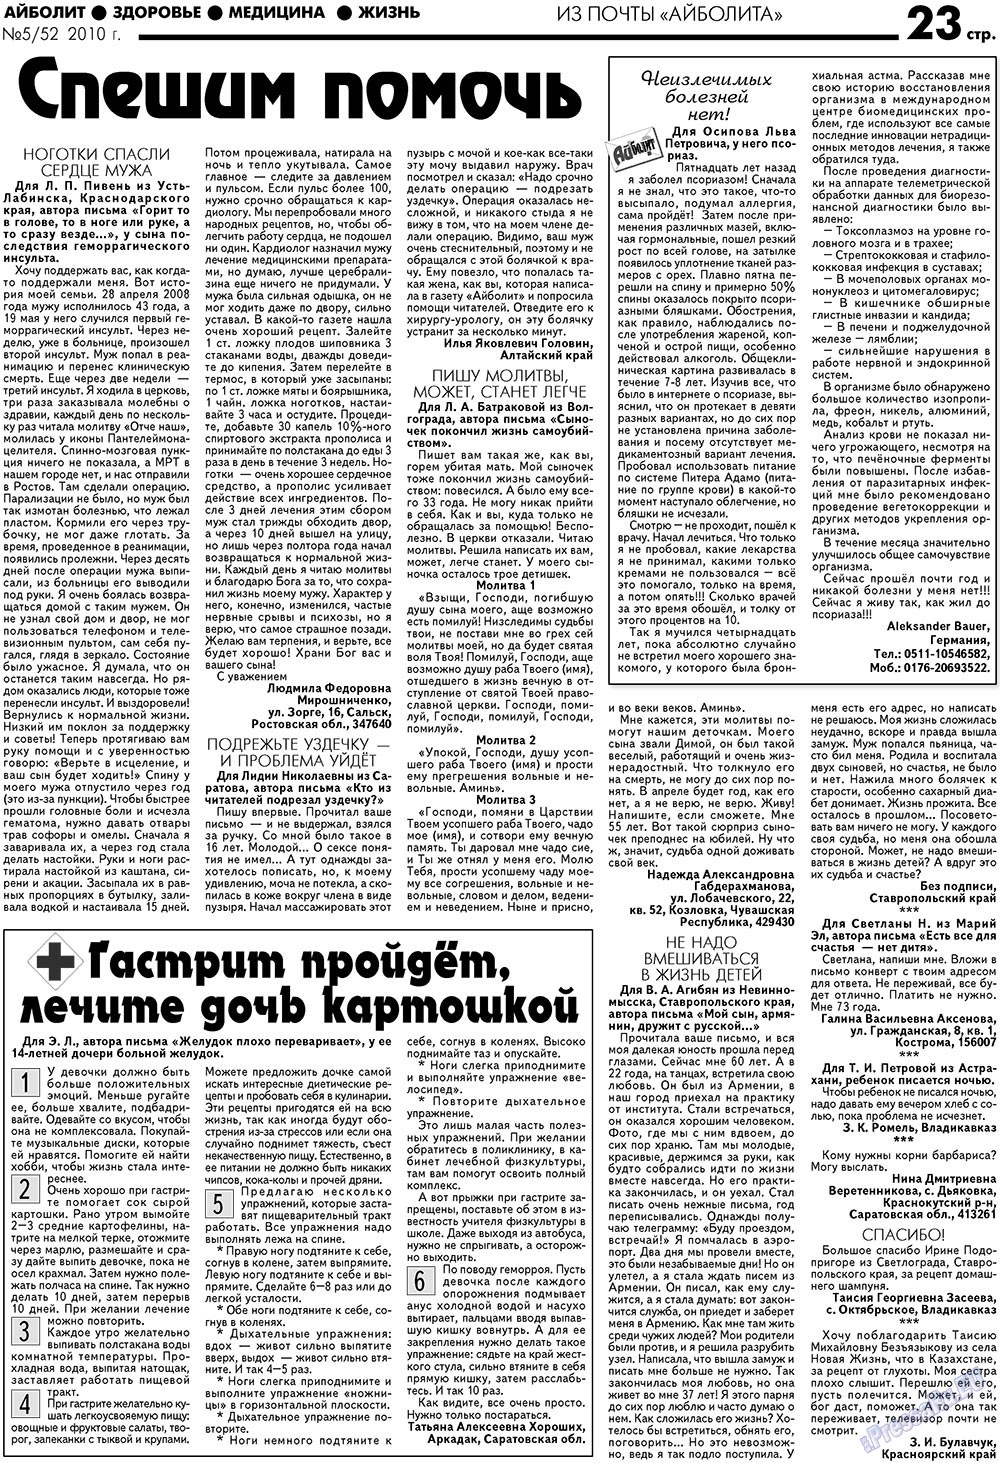 АйБолит, газета. 2010 №5 стр.23